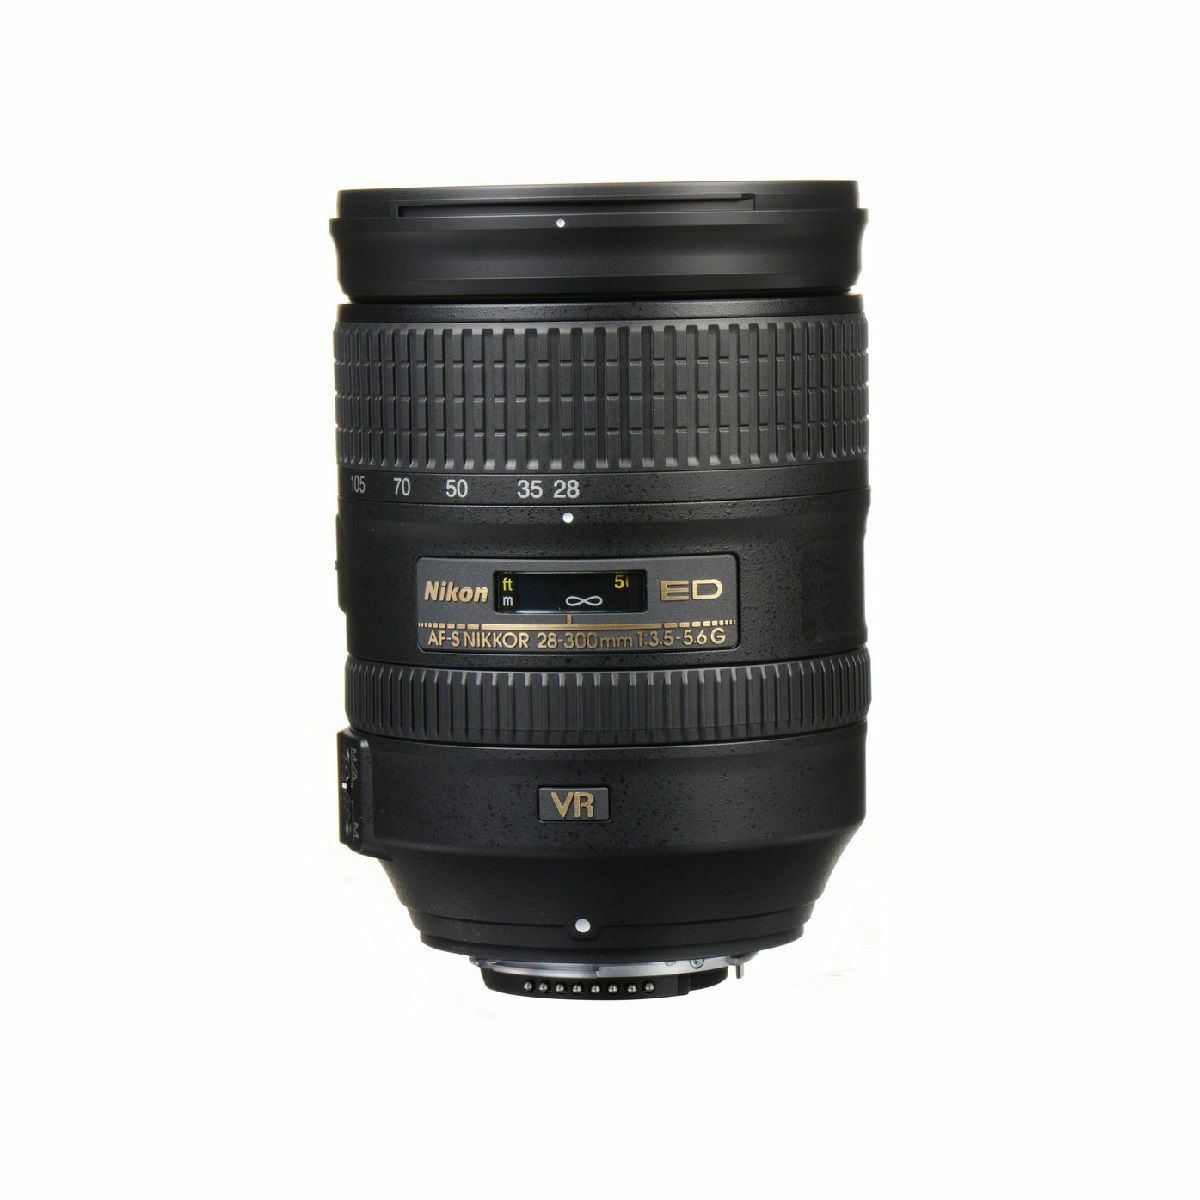 【値下げ】Nikon NIKKOR 28-300mm f/3.5-5.6G ED